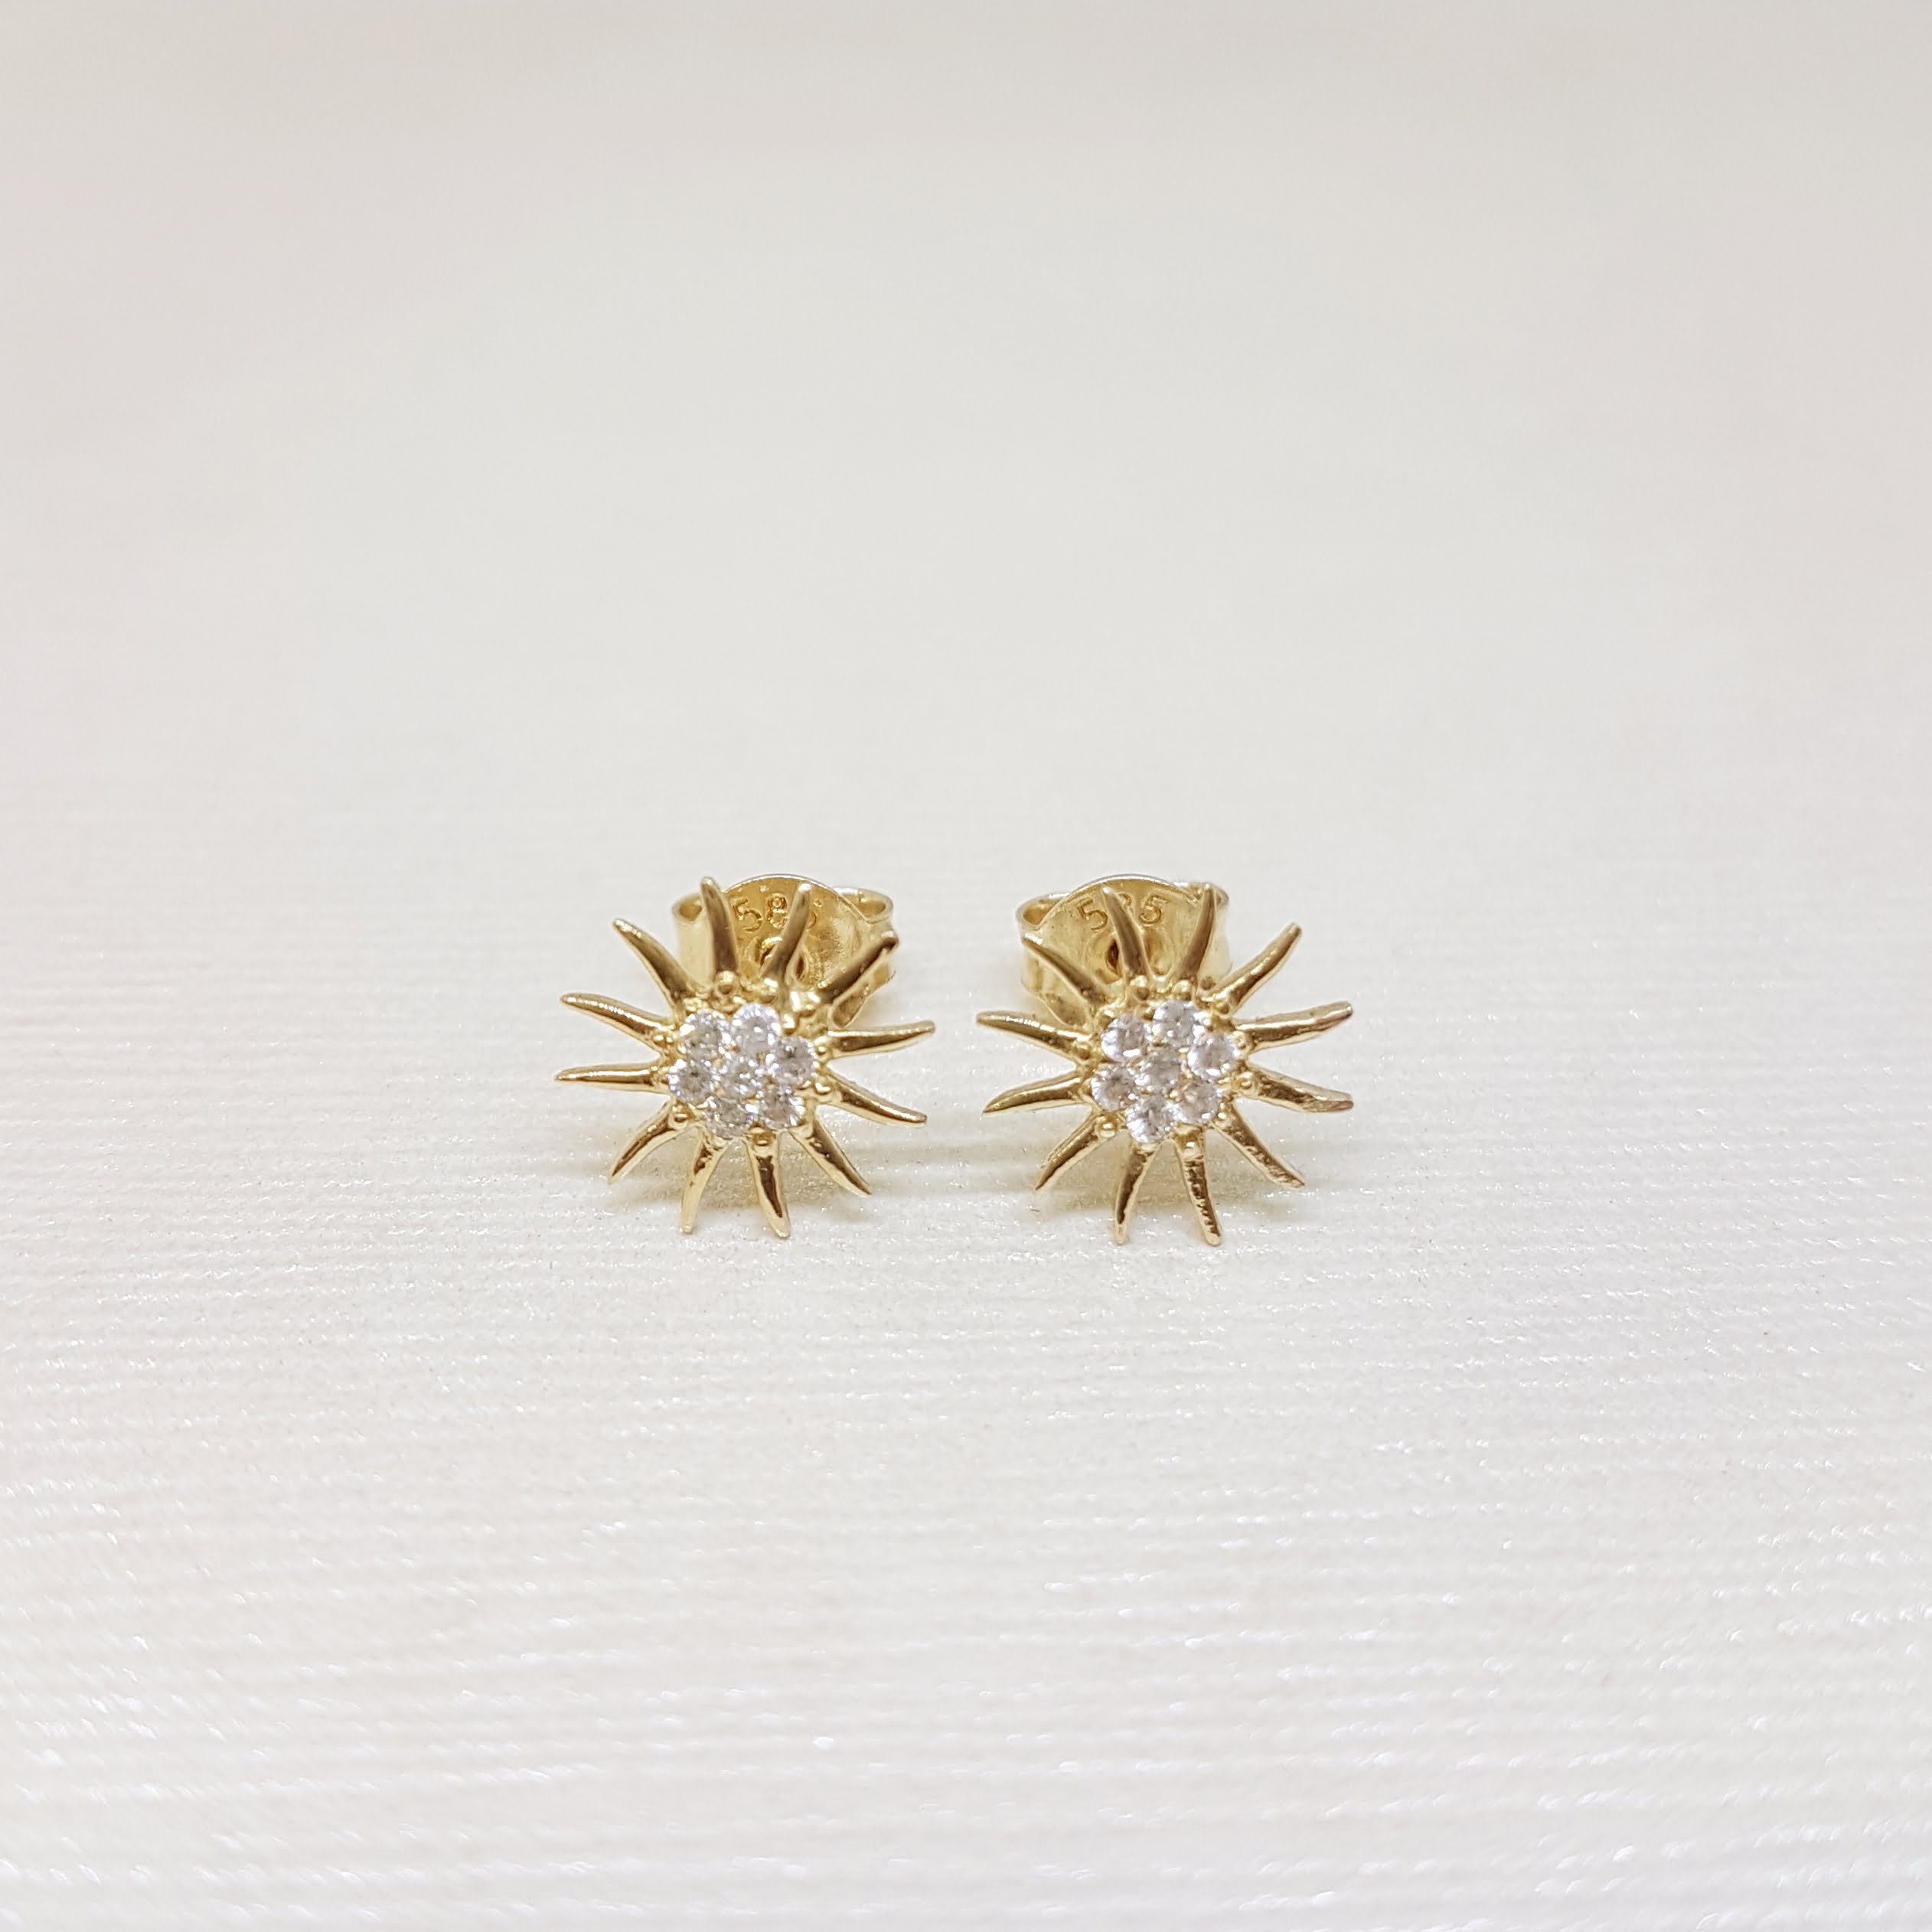 dainty earrings minimal small earrings sun stud earrings gold stud earrings gold sun earrings Sun Studs tiny stud earrings